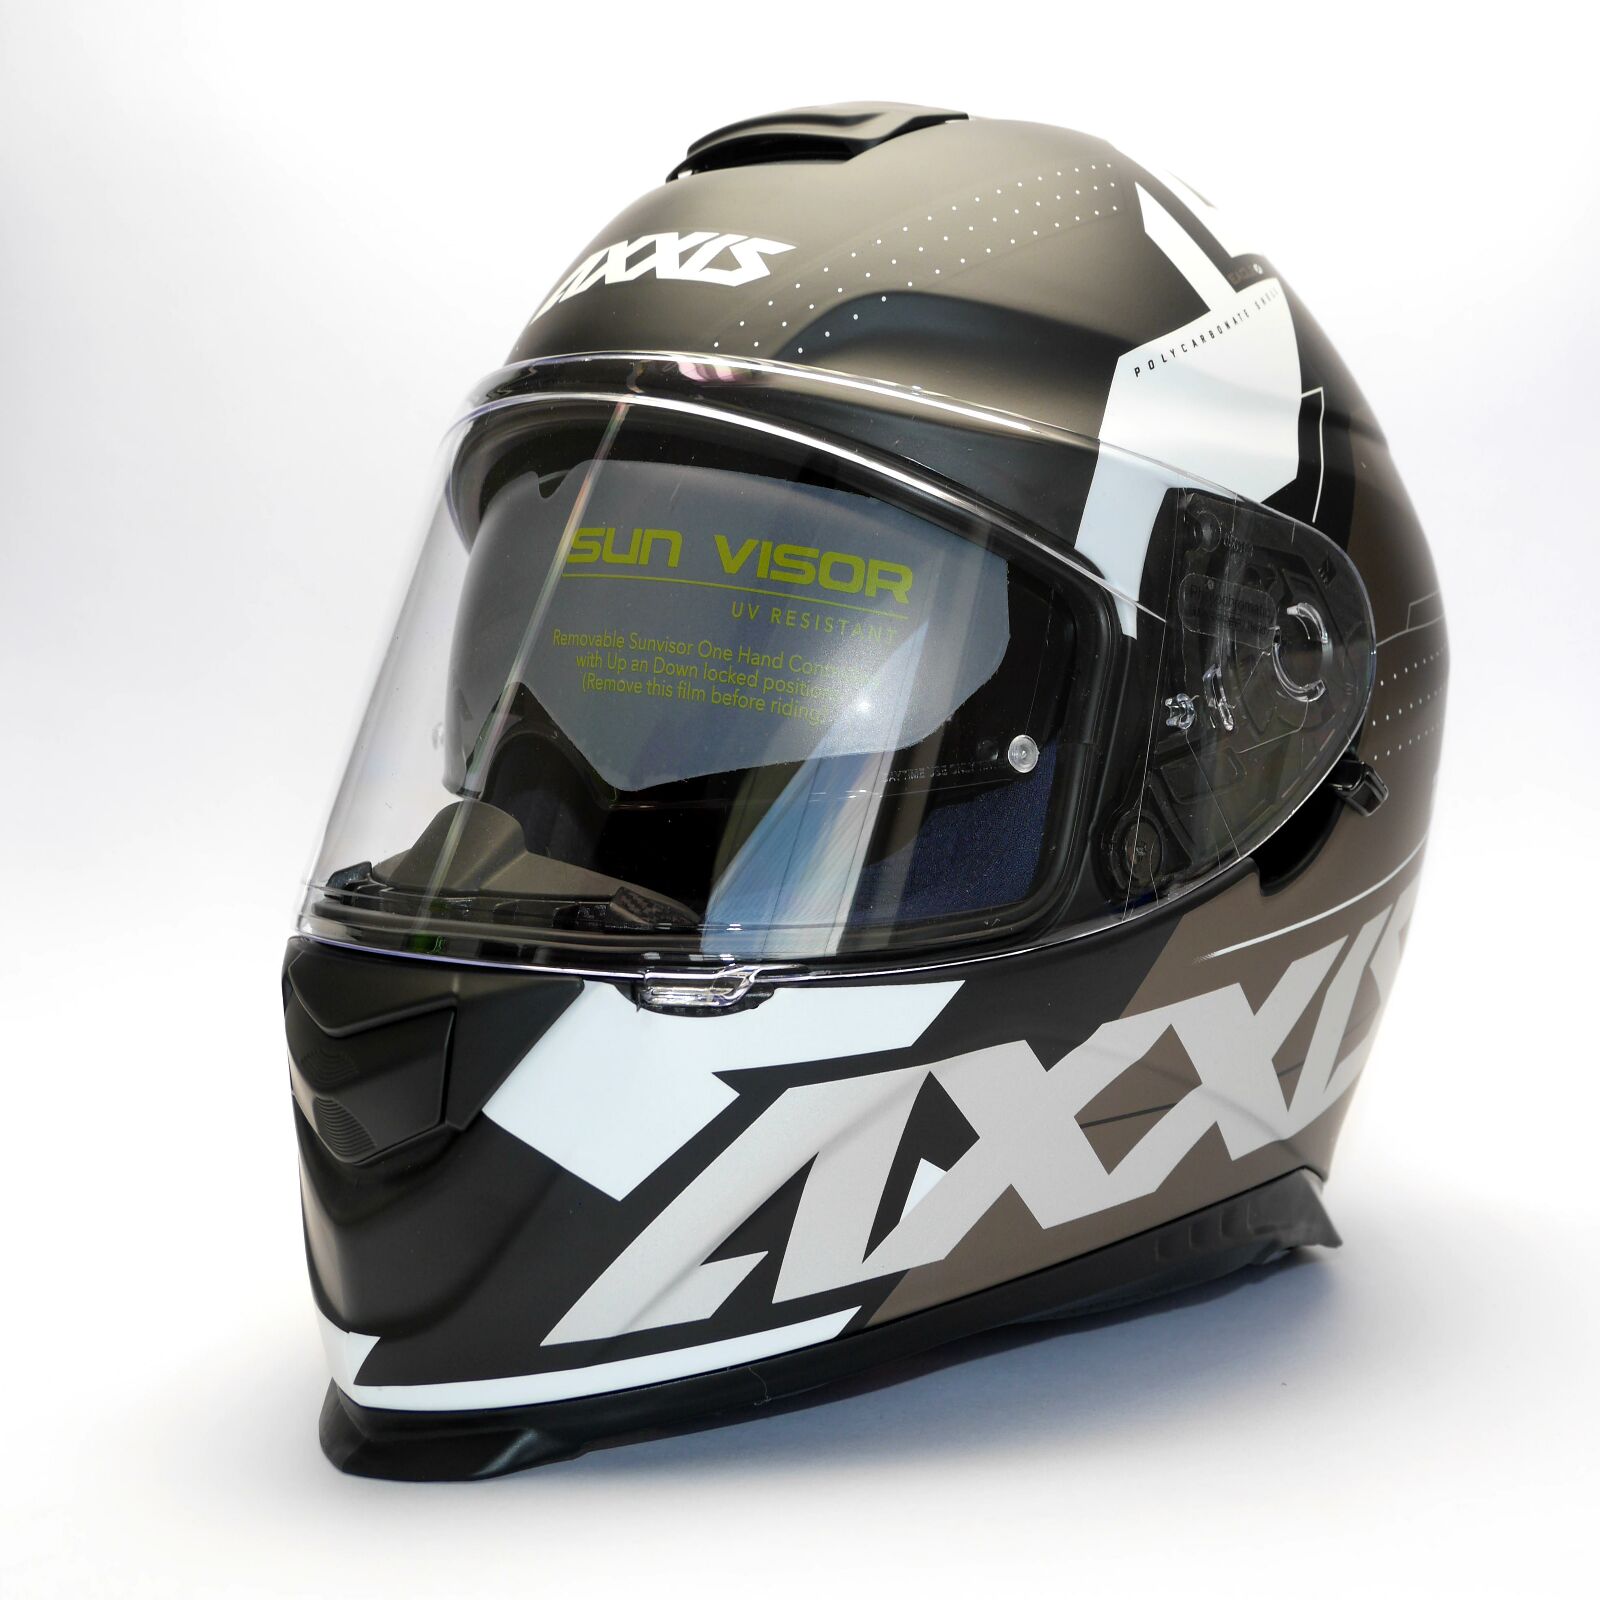 Obrázek produktu Integrální helma AXXIS EAGLE SV DIAGON D3 matná bílá L 42565233336